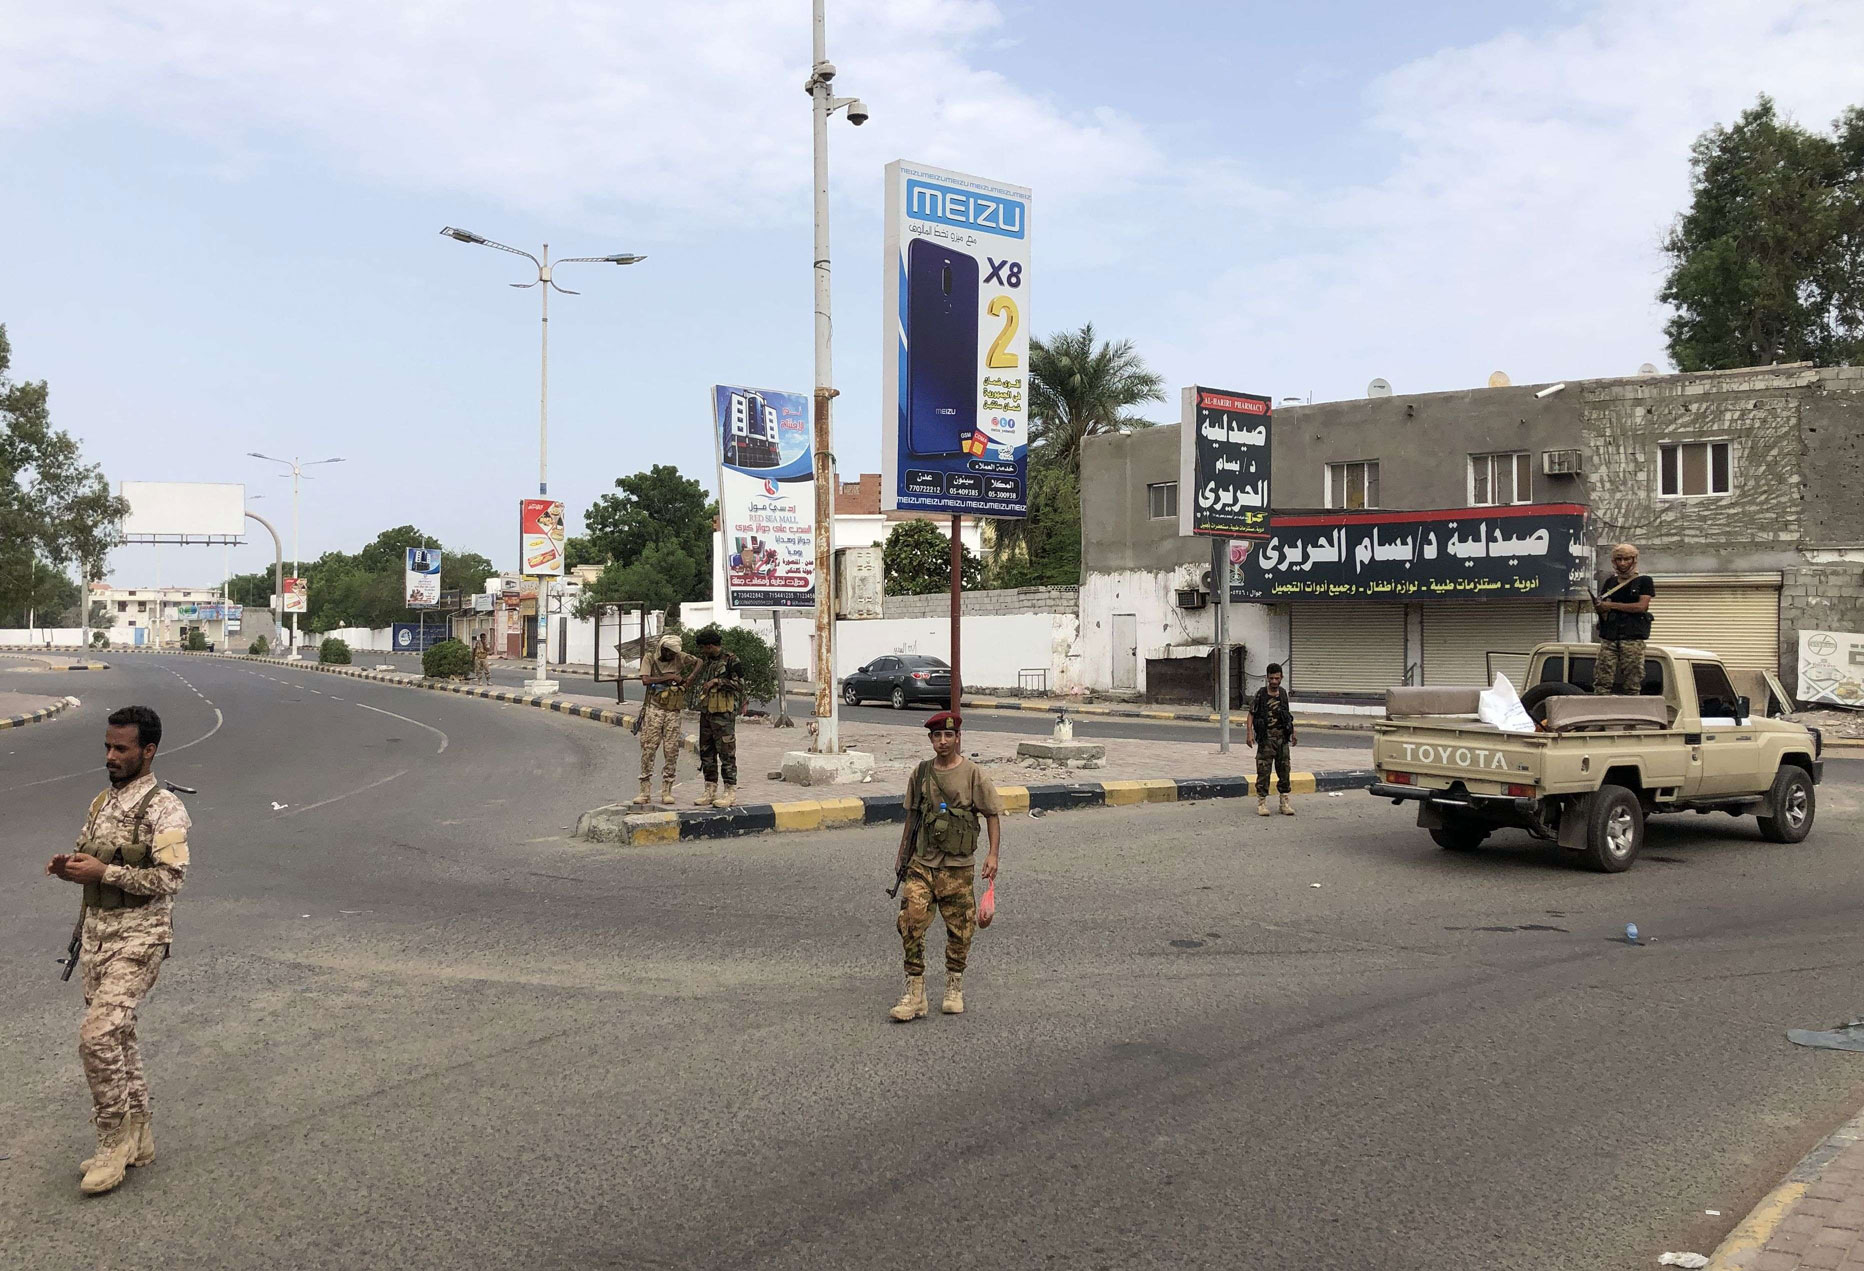 قوات الحزام الأمني تستعيد زمام المبادرة بعد حملة تضليل اعلامي أربكت بعض وحداتها 